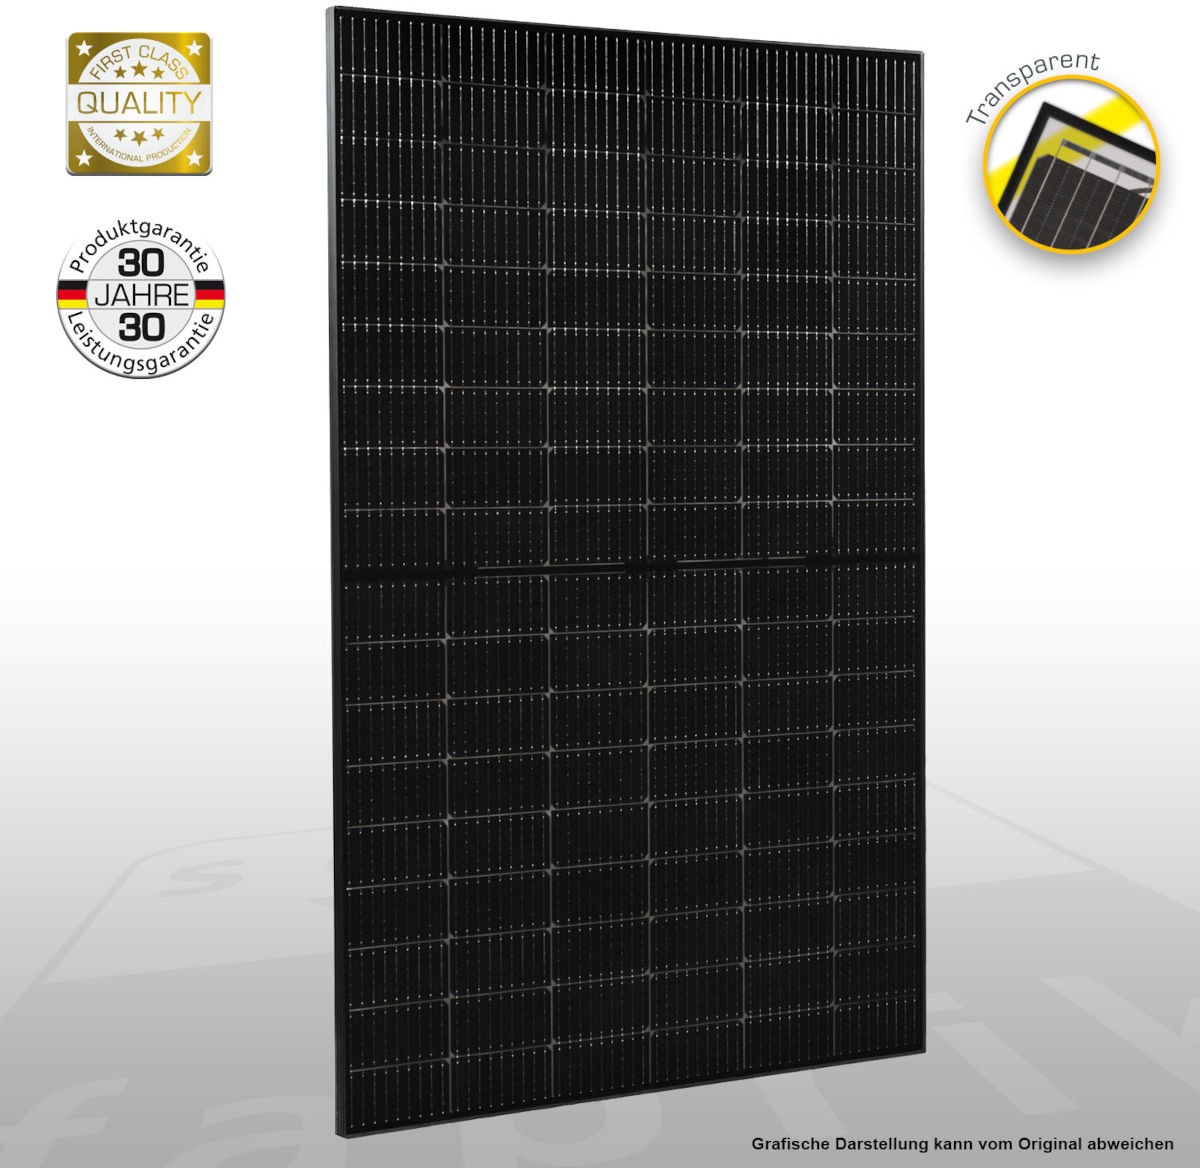 Solar-Modul Solar Fabrik Mono S4 IVP 425W, Schrägansicht, Qualitätssiegel, vor weißem Hintergrund